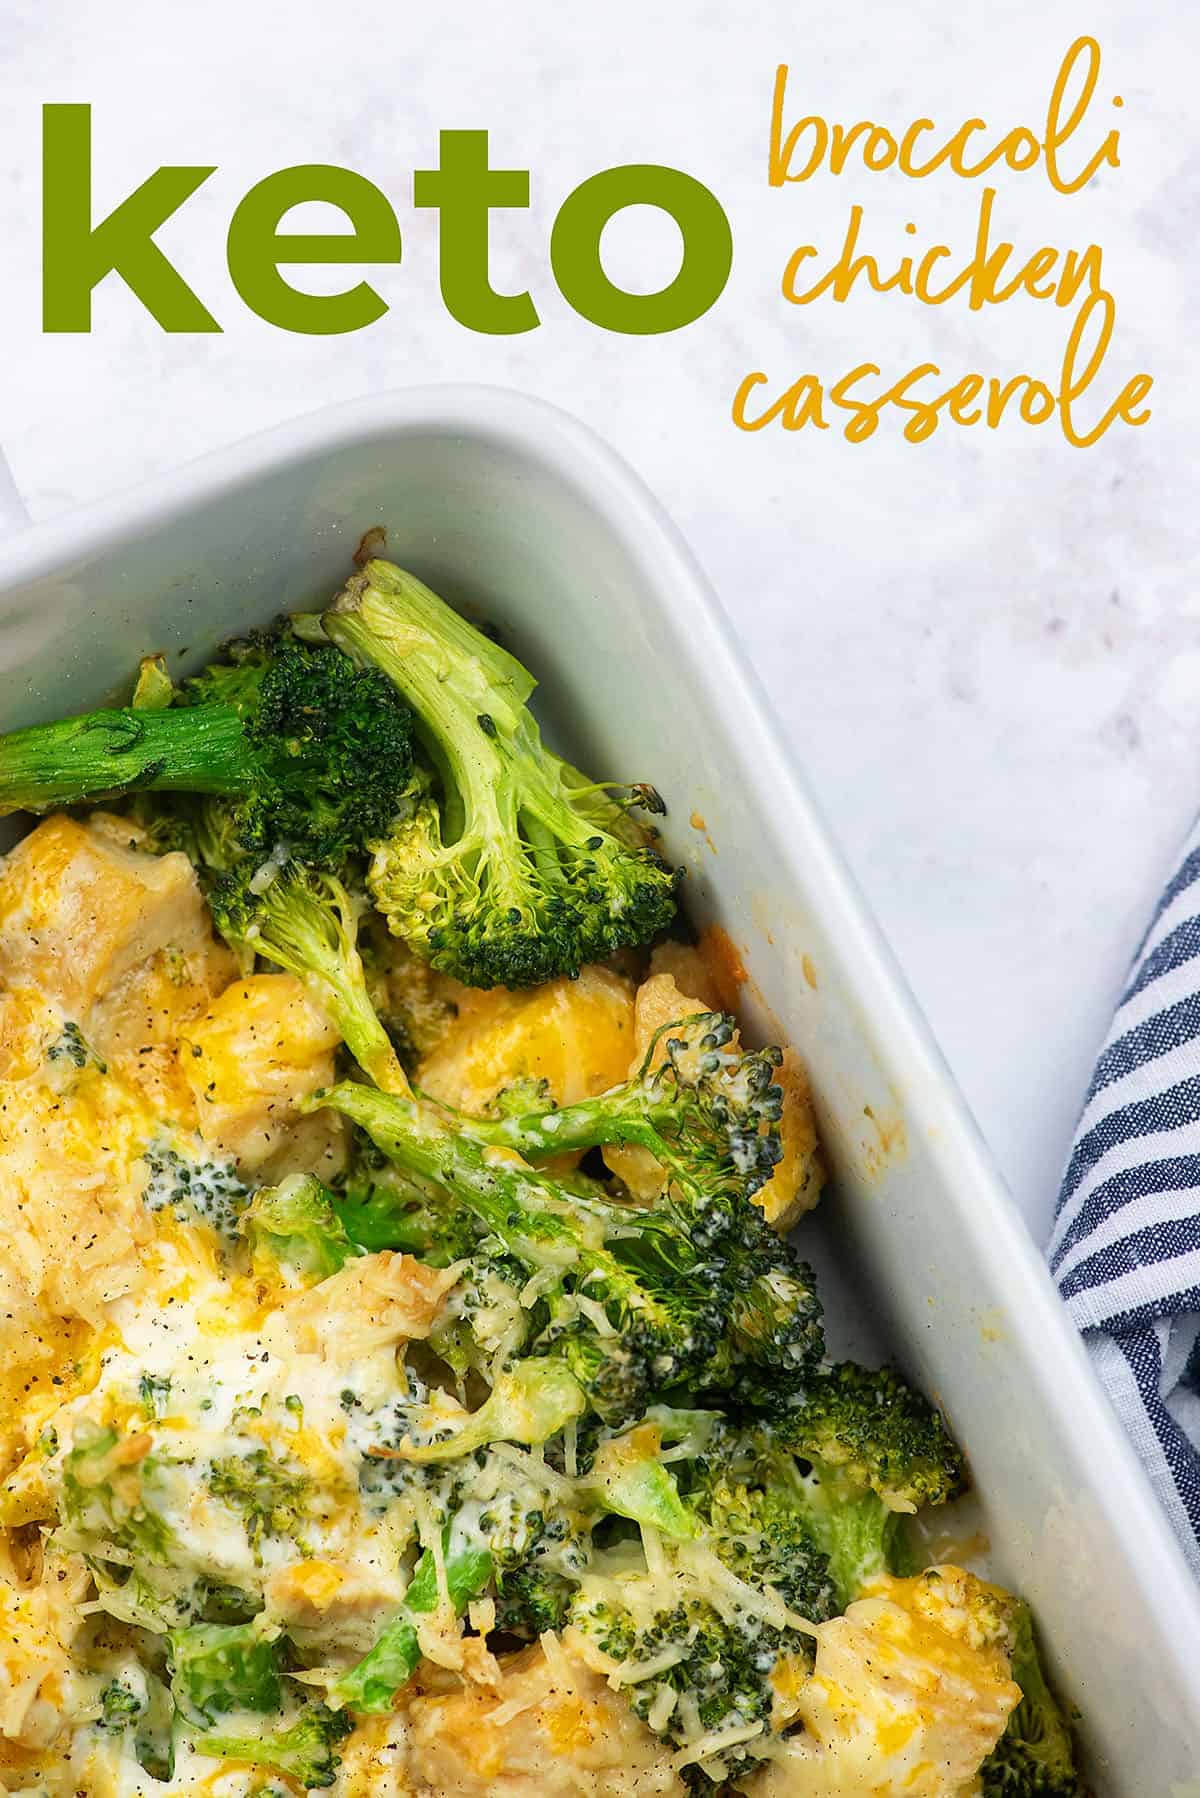 keto broccoli chicken casserole recipe in white baking dish